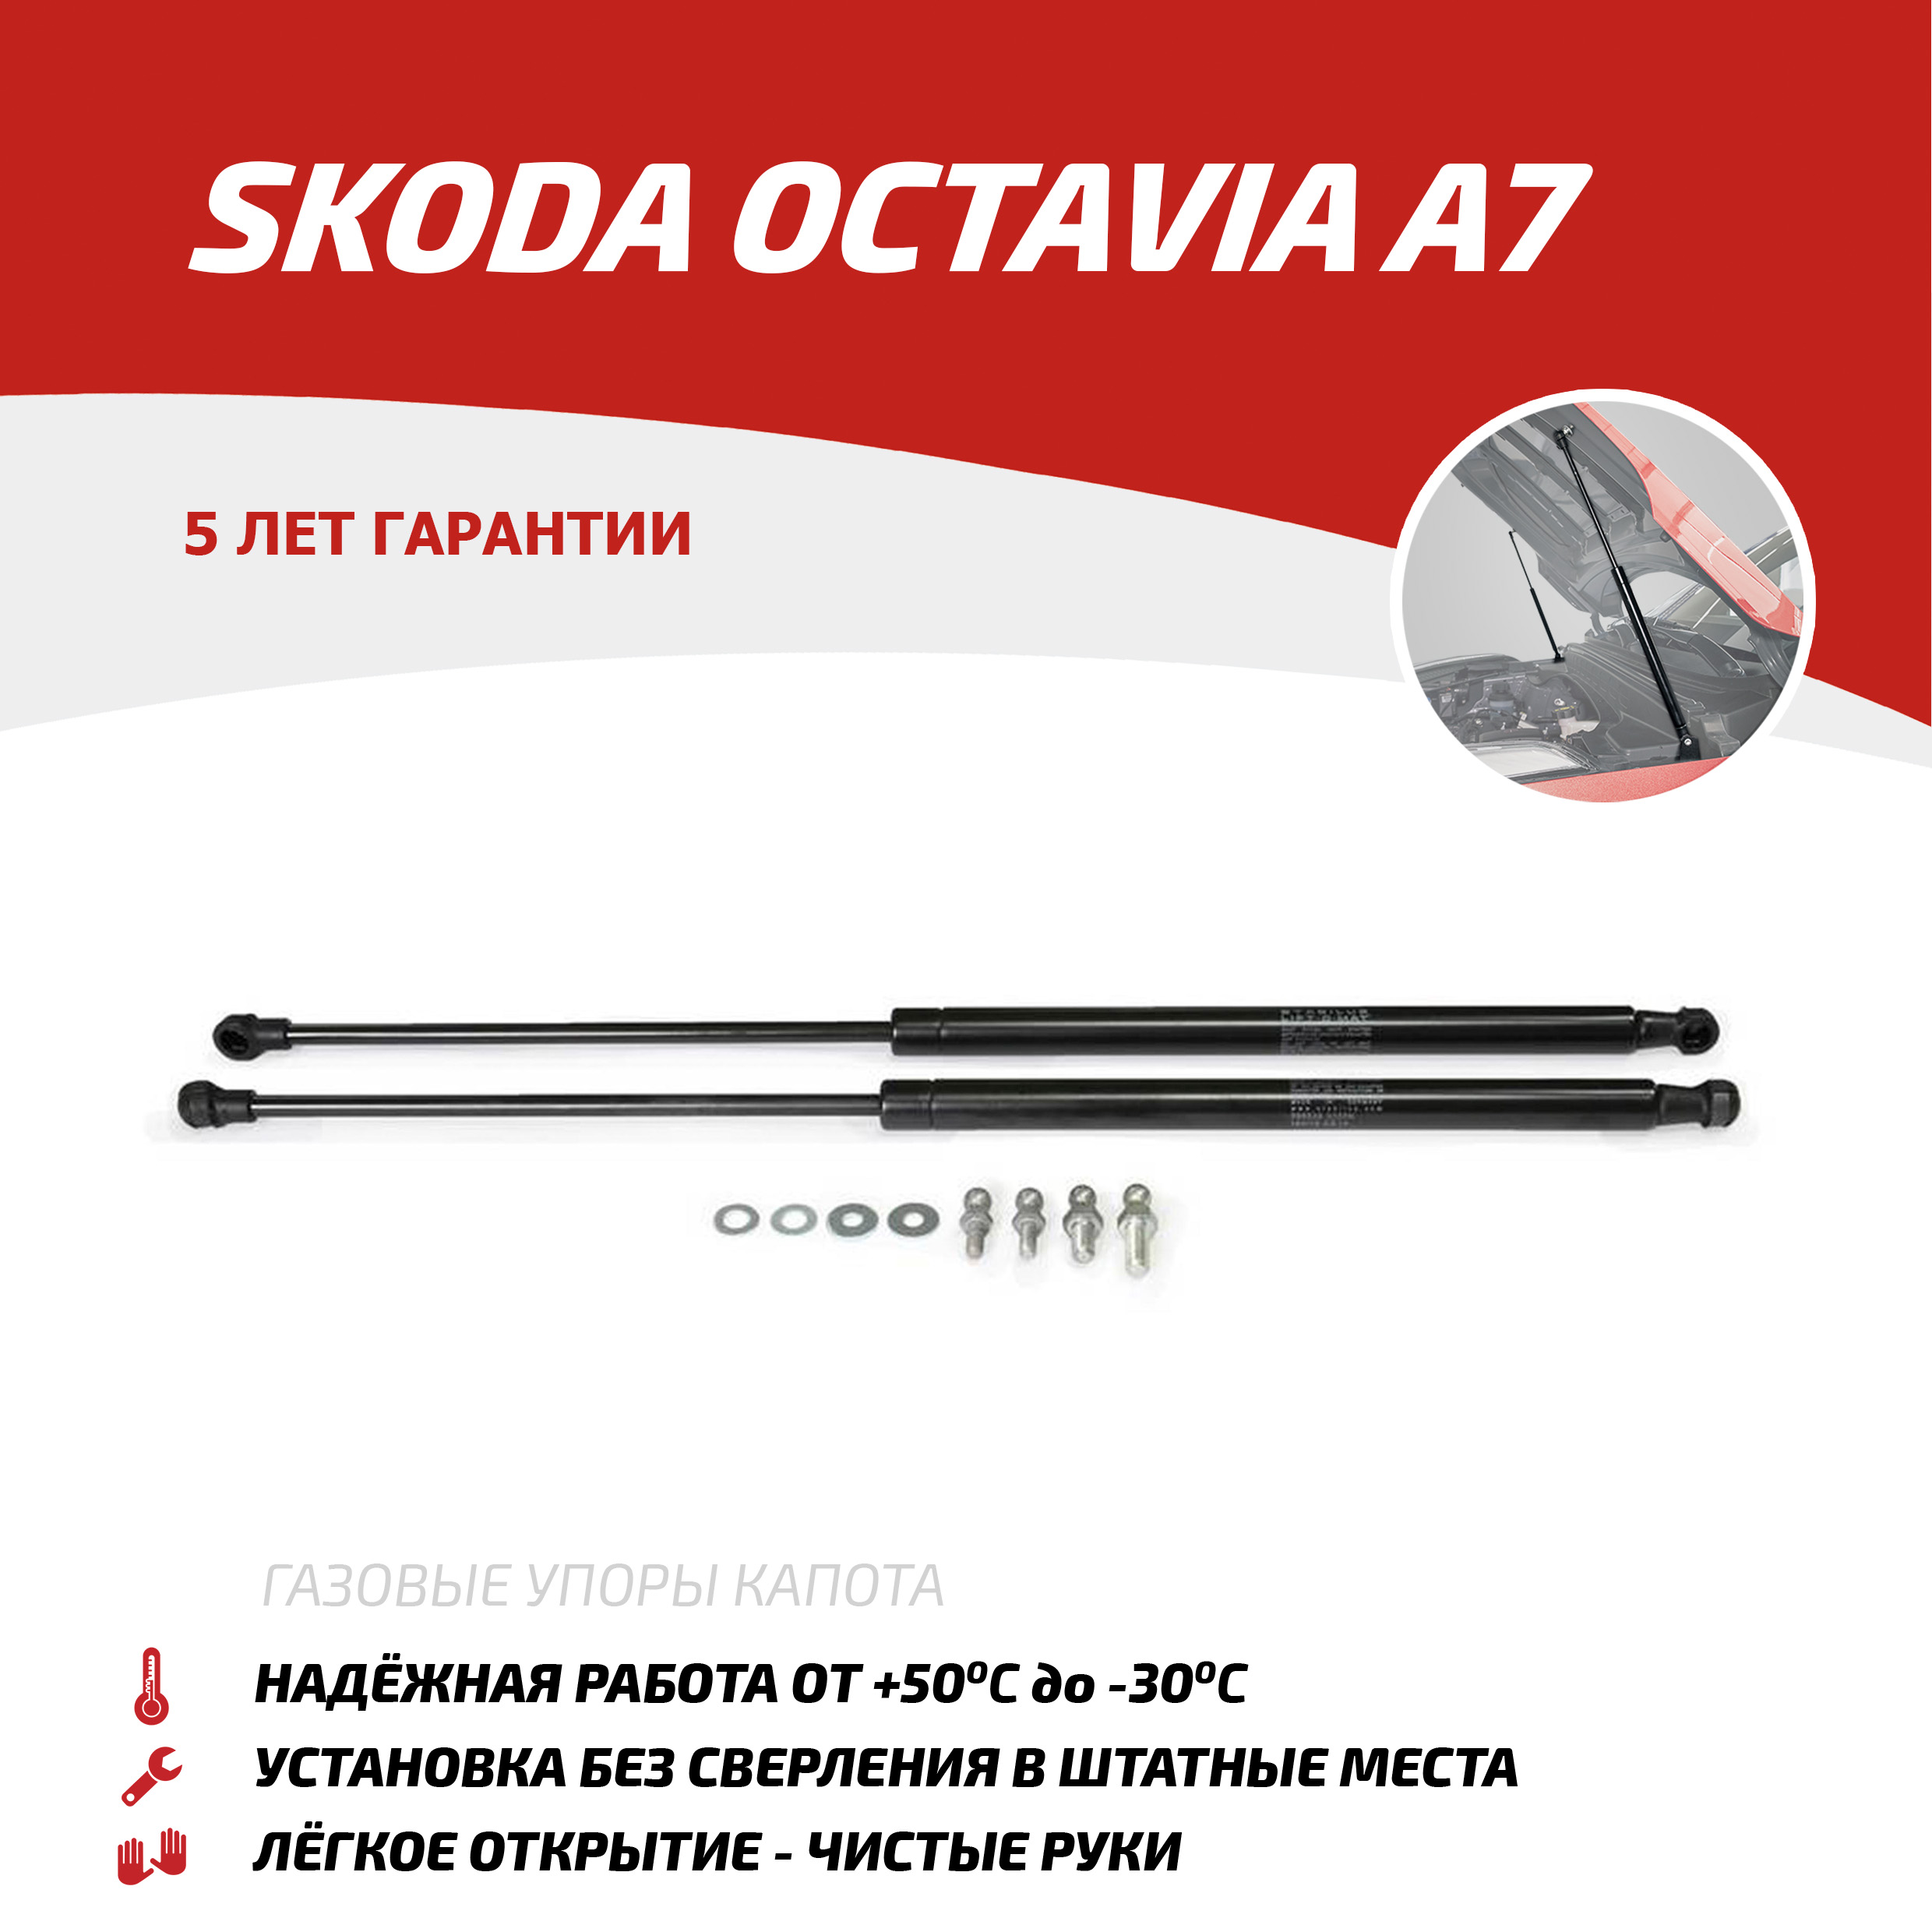 Газовые упоры капота АвтоУпор для Skoda Octavia A7 2013-2020, 2 шт., USKOA7012